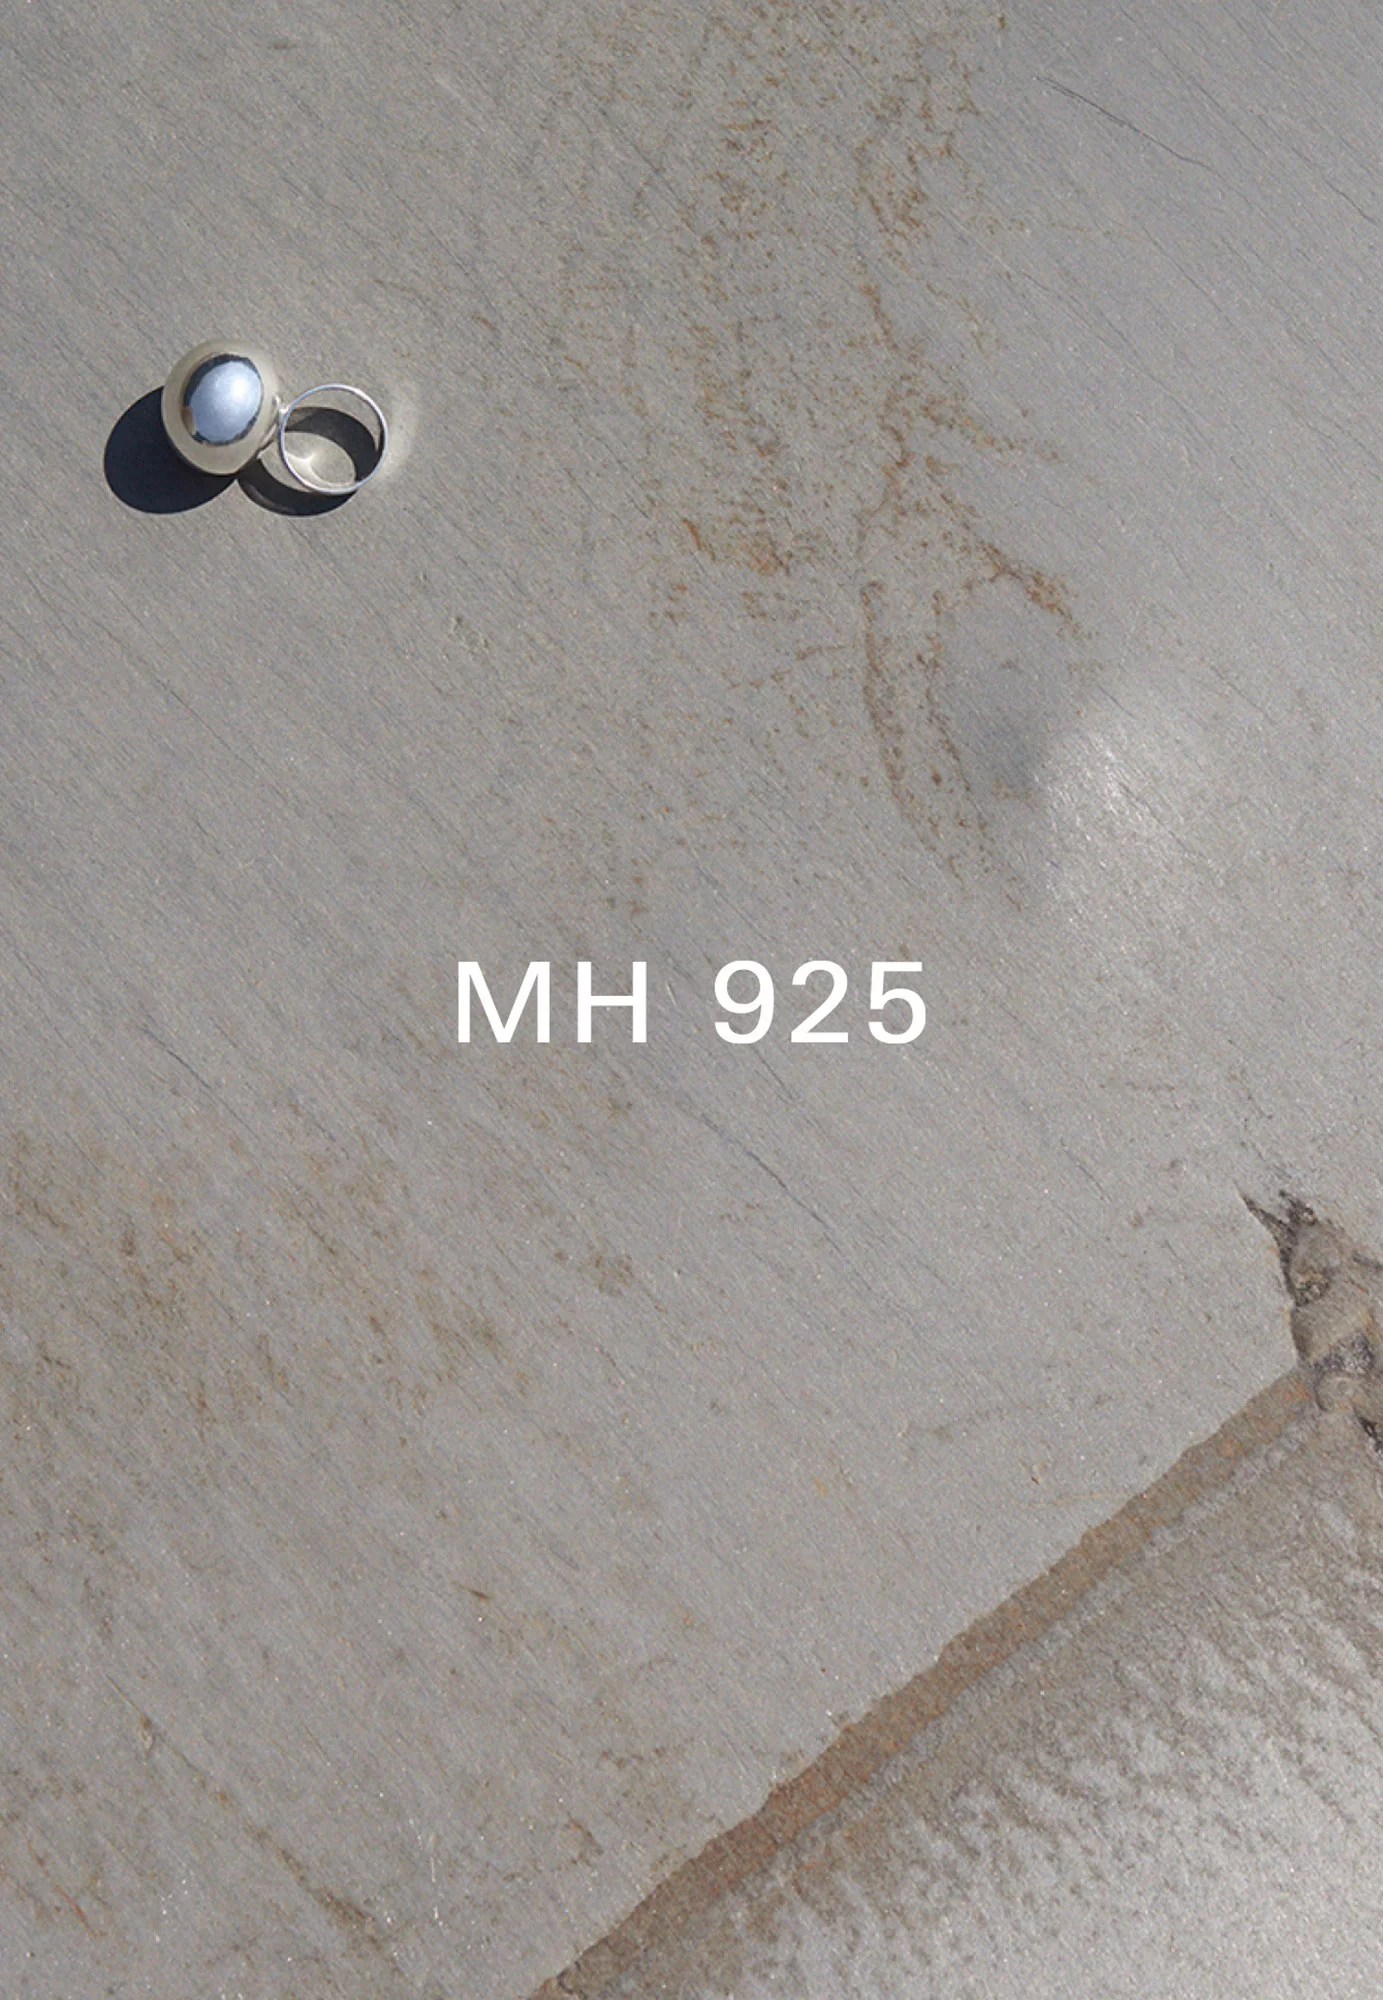 MH 925 13 by Rickard SUND